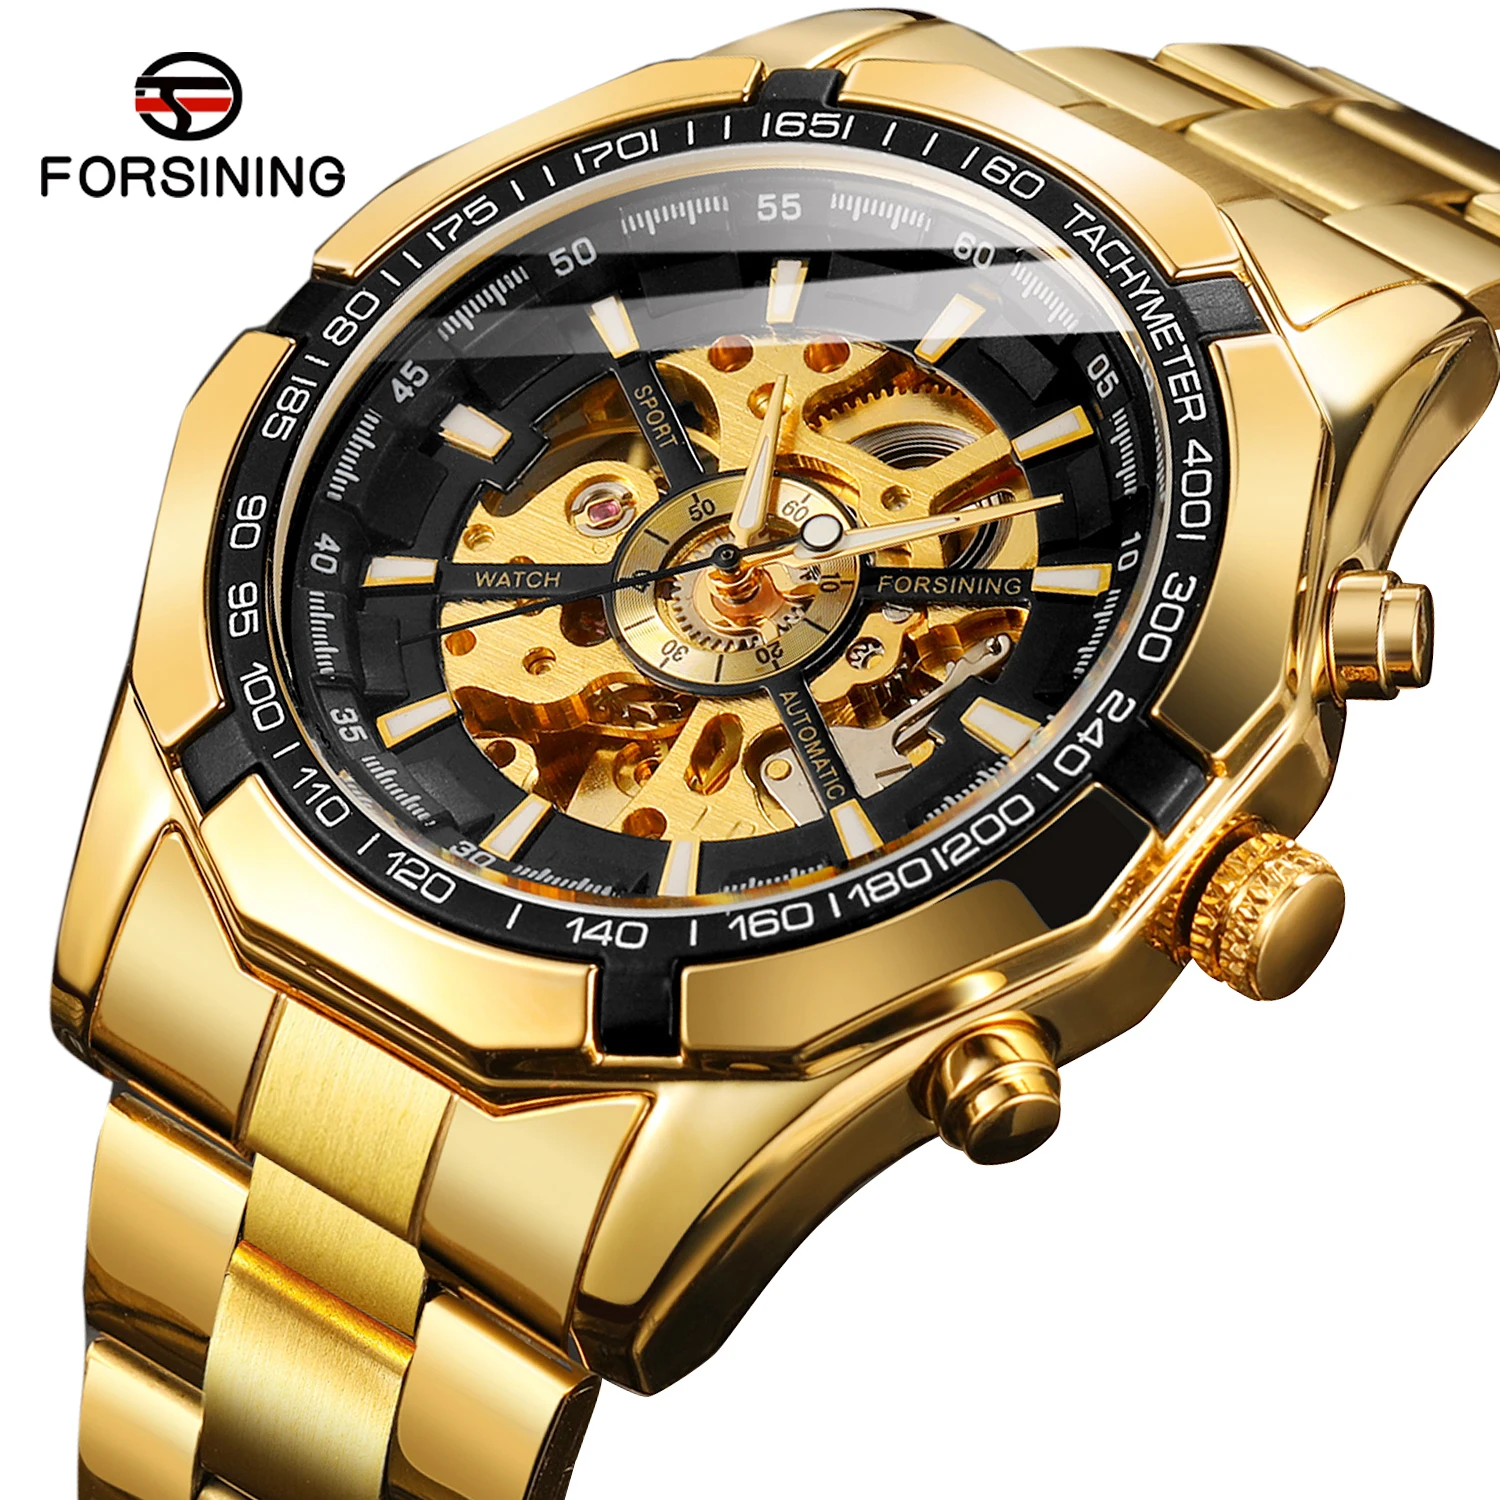 
2021relogio forsining часы Скелет автоматические механические часы золото Мужчины Скелет из нержавеющей стали Кварцевые часы для мужчин, который надевается на лучезапястный сустав  (60283069217)